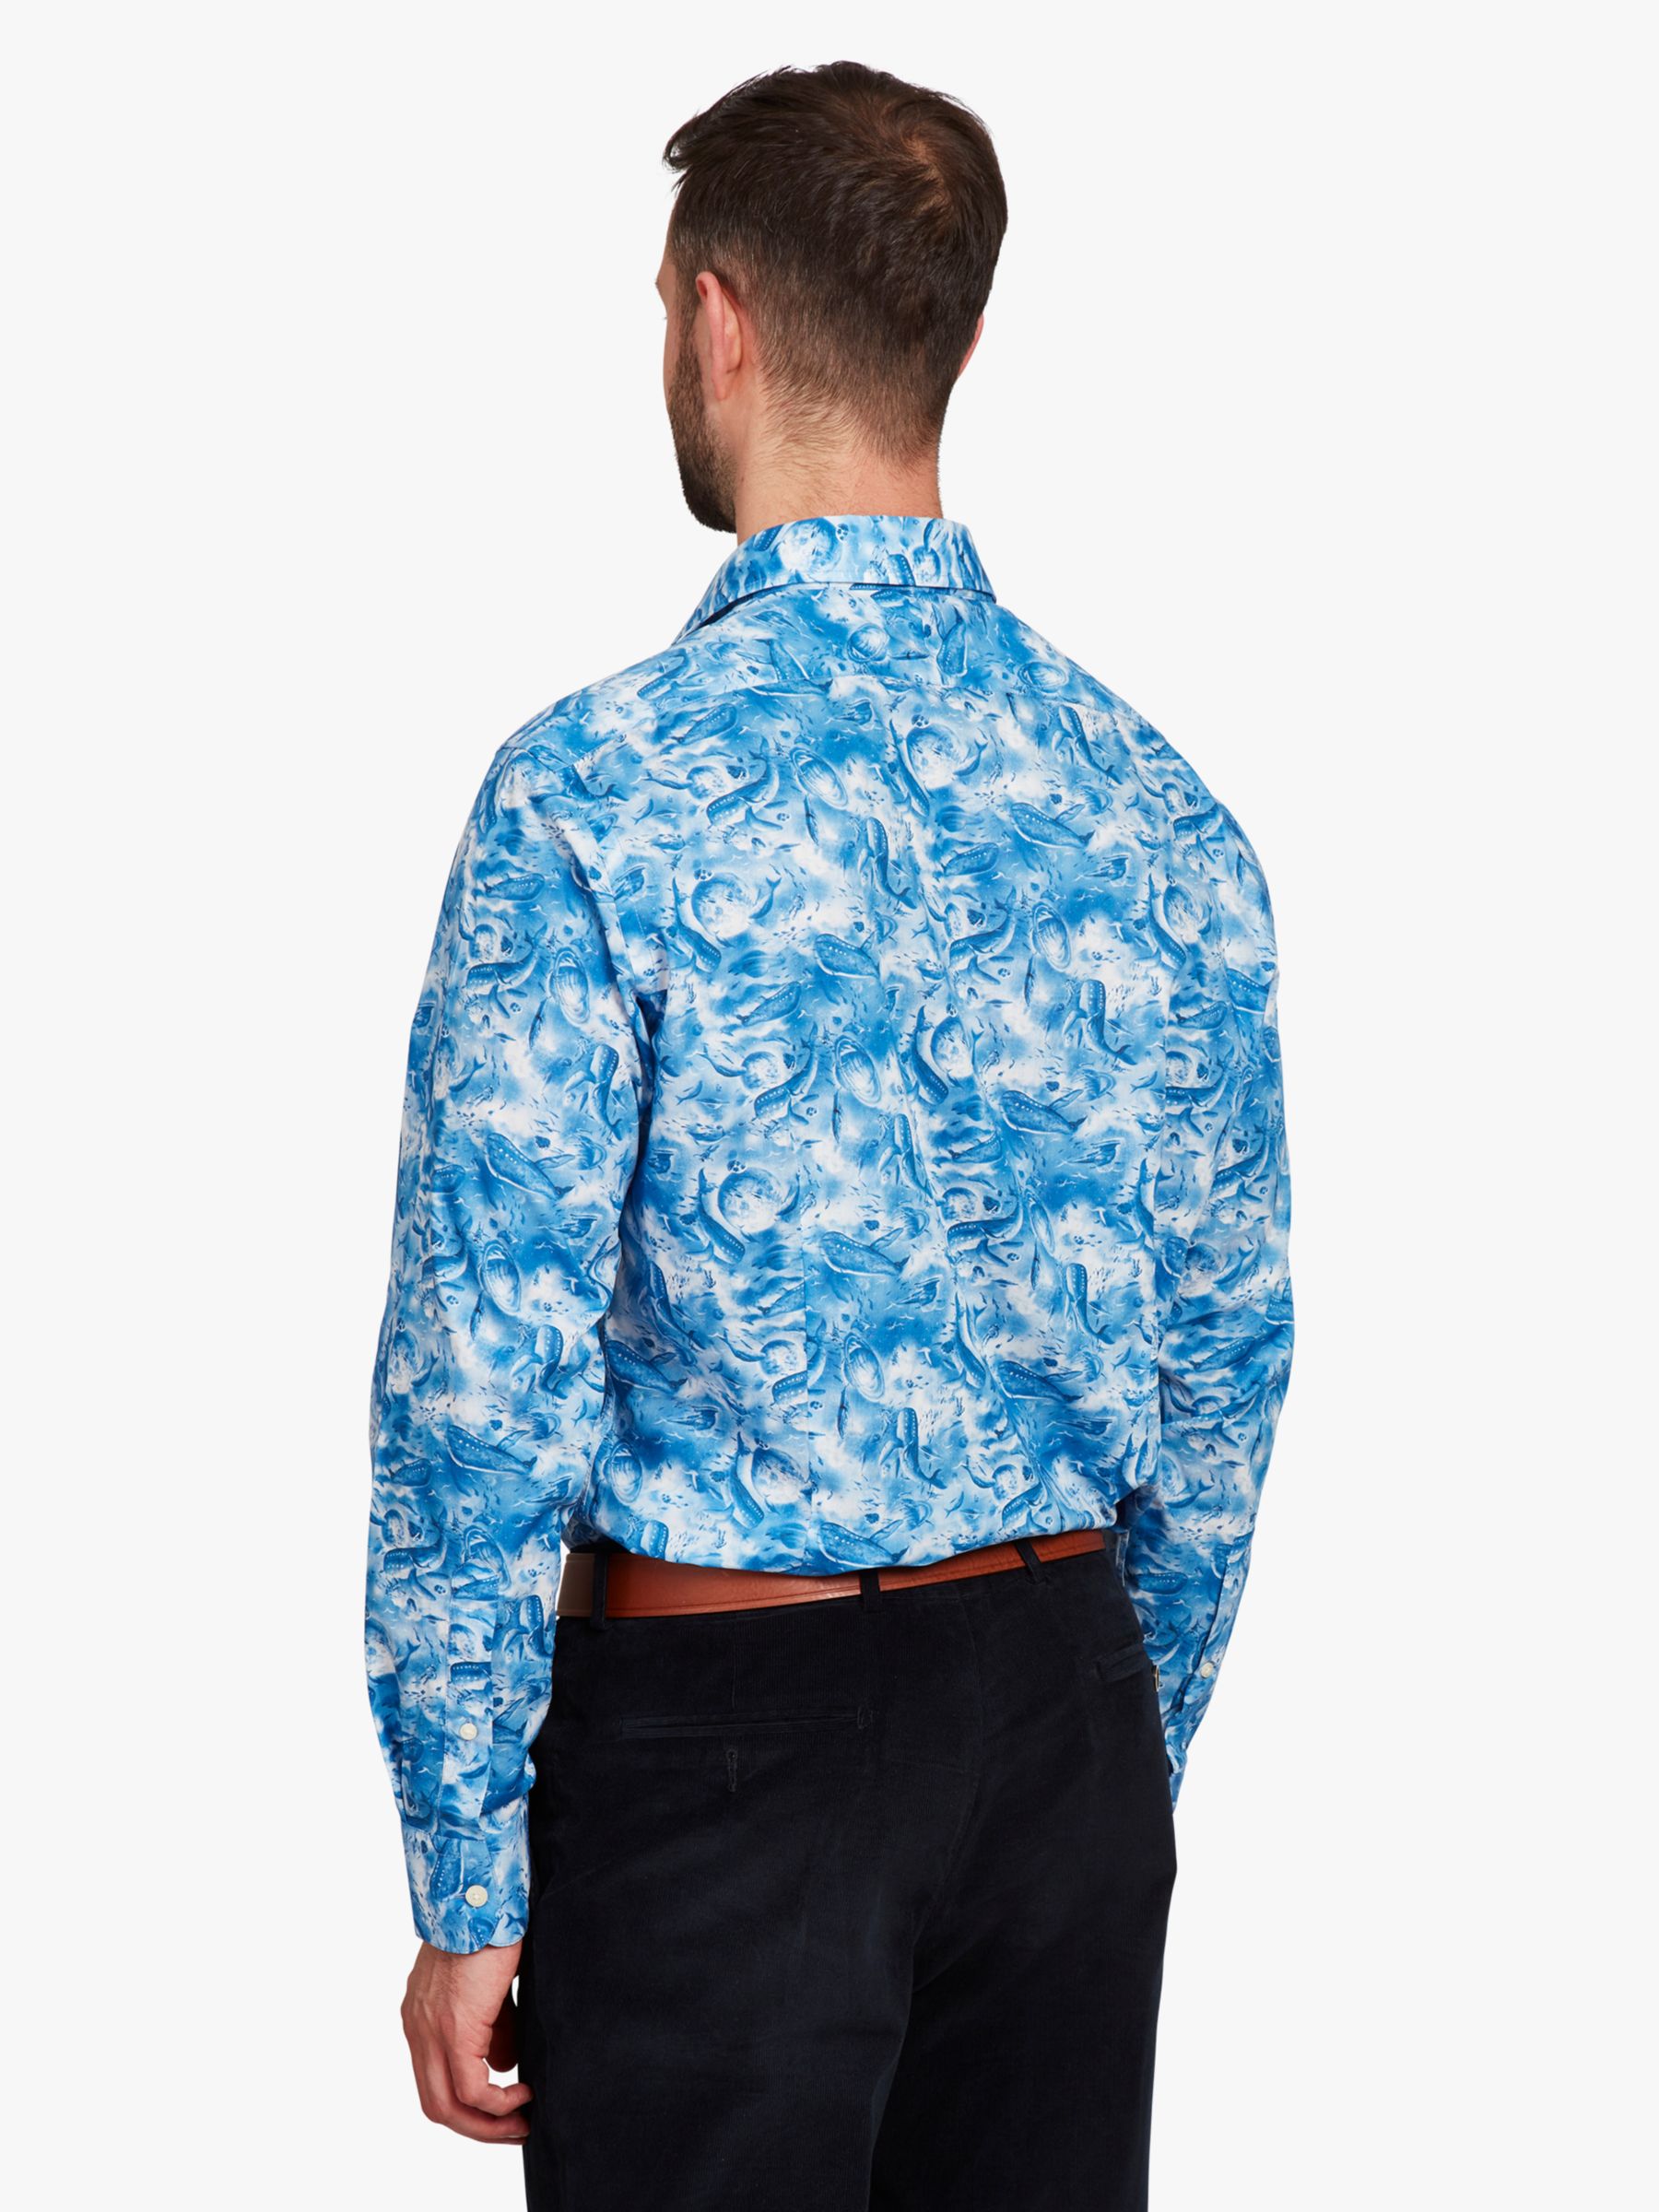 Buy Simon Carter Xander Shirt, Blue/White Online at johnlewis.com